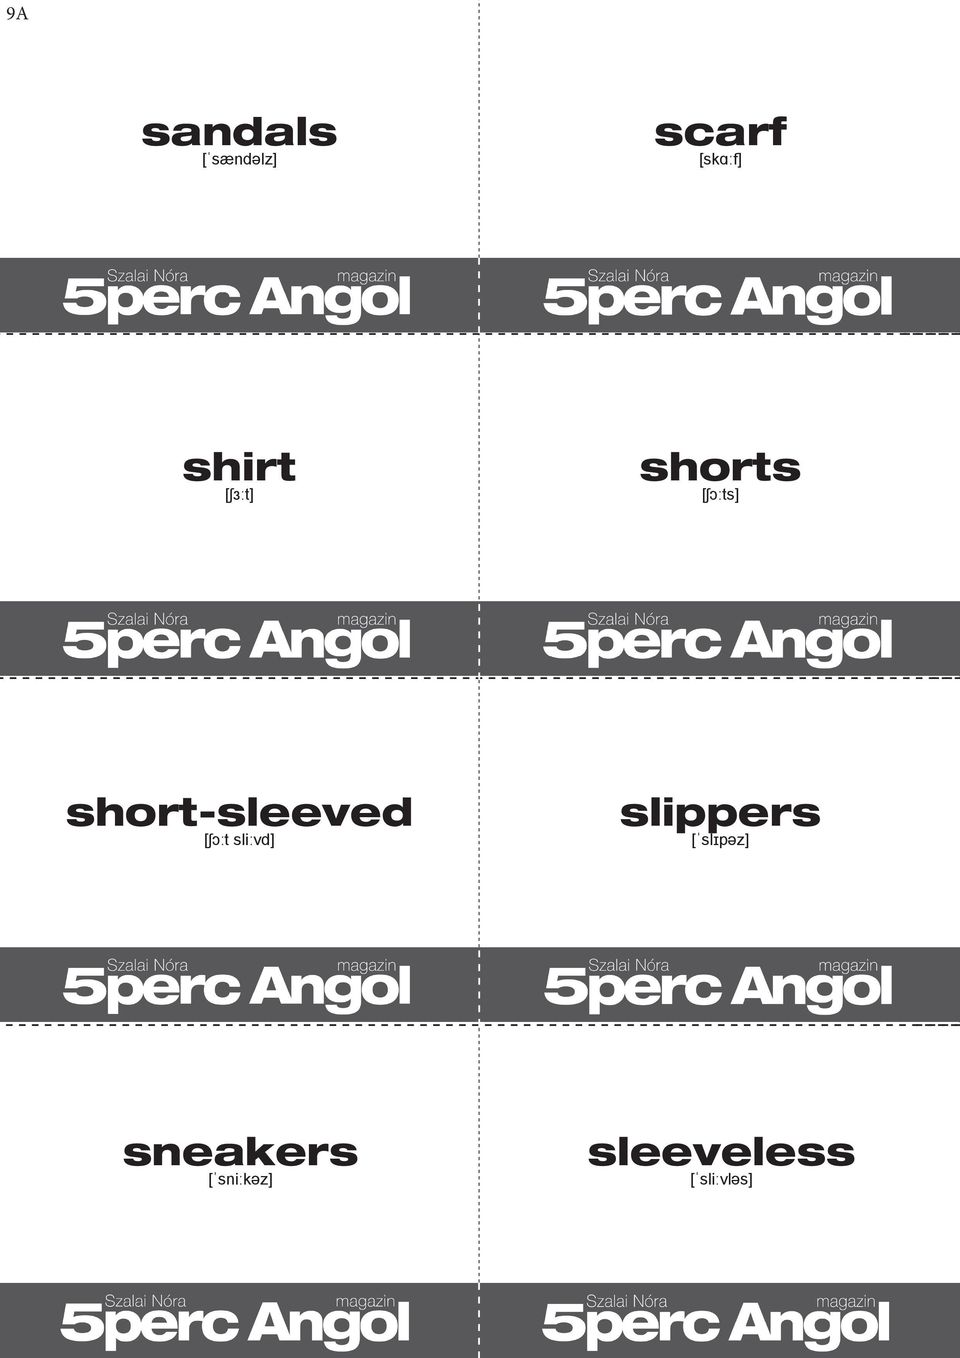 short-sleeved [ʃɔːt sliːvd] slippers